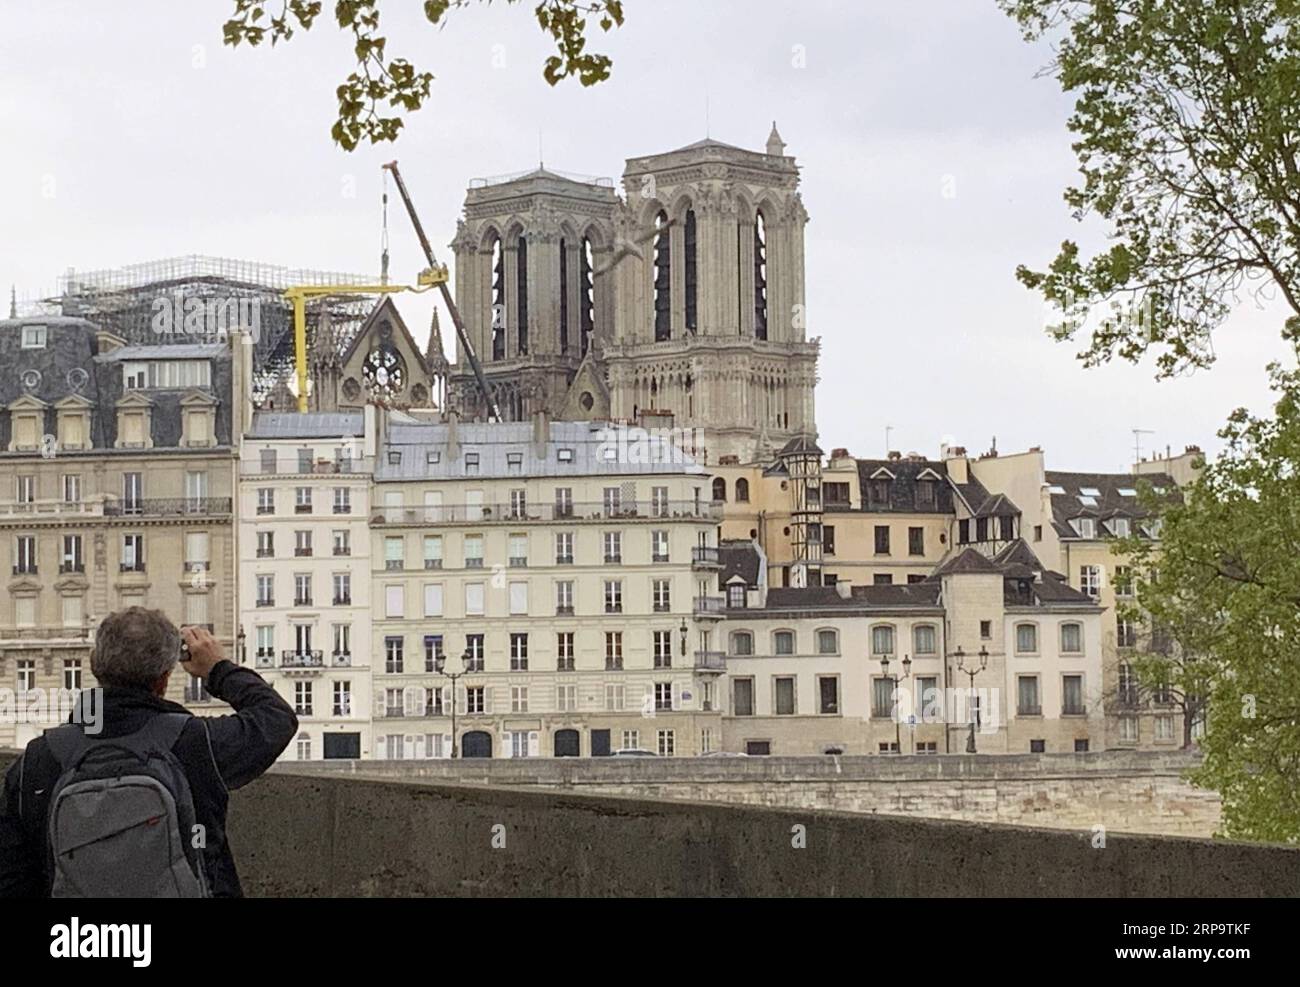 (190417) -- PARIS, 17. April 2019 (Xinhua) -- Foto vom 16. April 2019 zeigt die beschädigte Kathedrale Notre Dame nach einem Brand in Paris, Frankreich. Der französische Präsident Emmanuel Macron versprach am Dienstag, innerhalb von fünf Jahren die Kathedrale Notre Dame, die am Montagabend vom Feuer verwüstet wurde, wieder aufzubauen und forderte die Franzosen auf, vereint zu bleiben. Am frühen Montagabend brach in der berühmten Kathedrale ein Feuer aus. Online-Aufnahmen zeigten dicken Rauch, der von der Spitze der Kathedrale wehte, und riesige Flammen zwischen ihren beiden Glockentürmen, die den Turm und das gesamte Dach umschlossen, die beide später zusammenbrachen. (Xinhua/Zheng bin) FRA Stockfoto